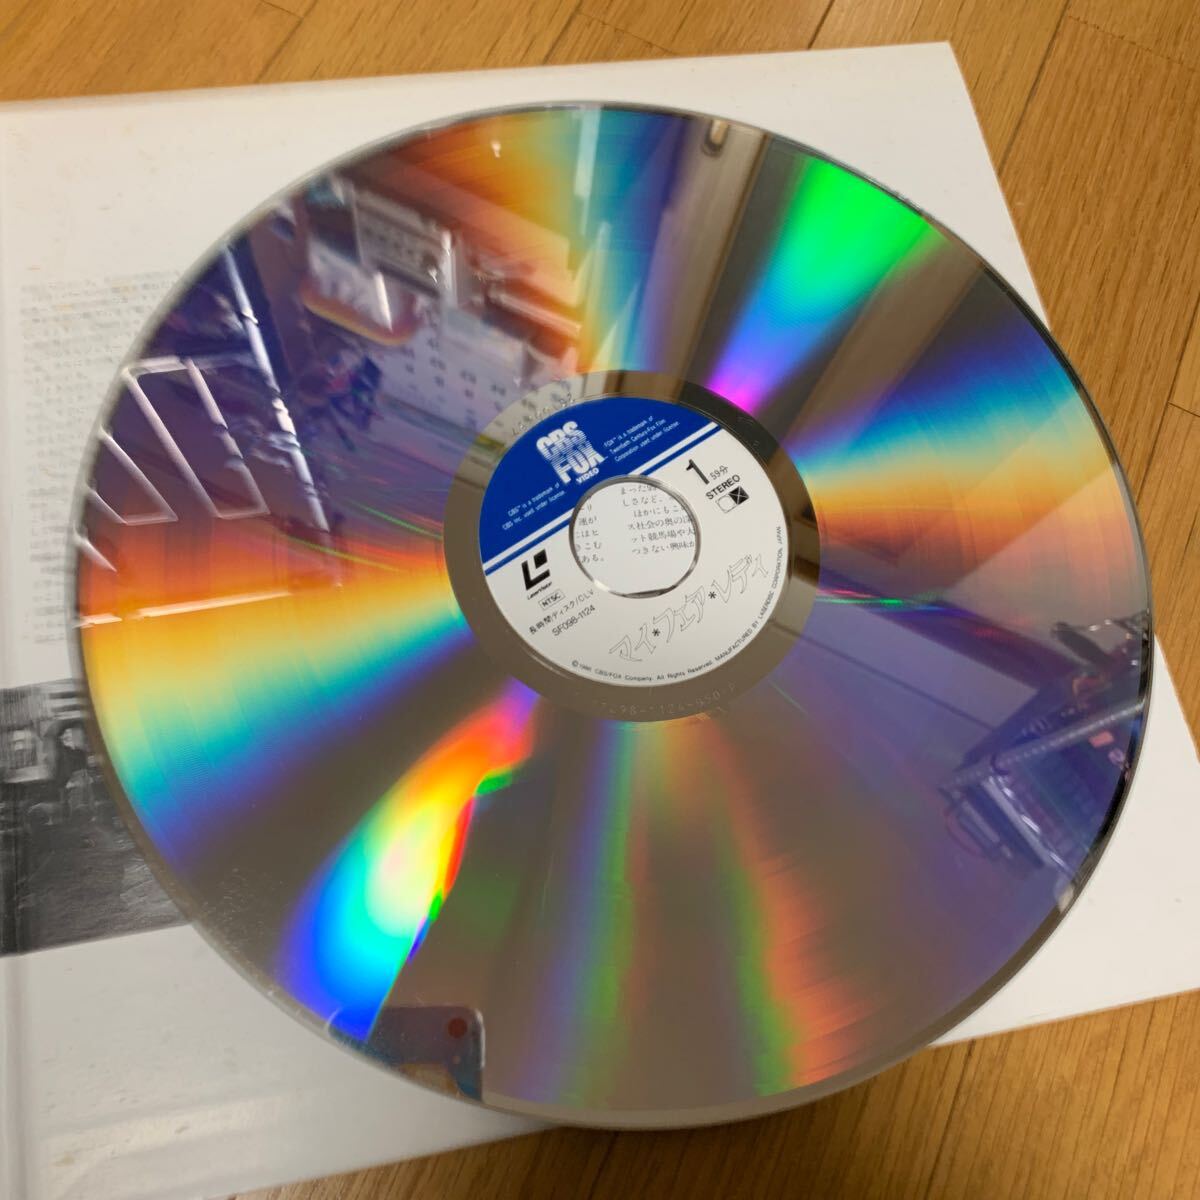  мой *fea*reti лазерный диск 2 листов комплект Одри Хепберн 1964 год красный temi-.8 группа 172 минут Rex Harrison 